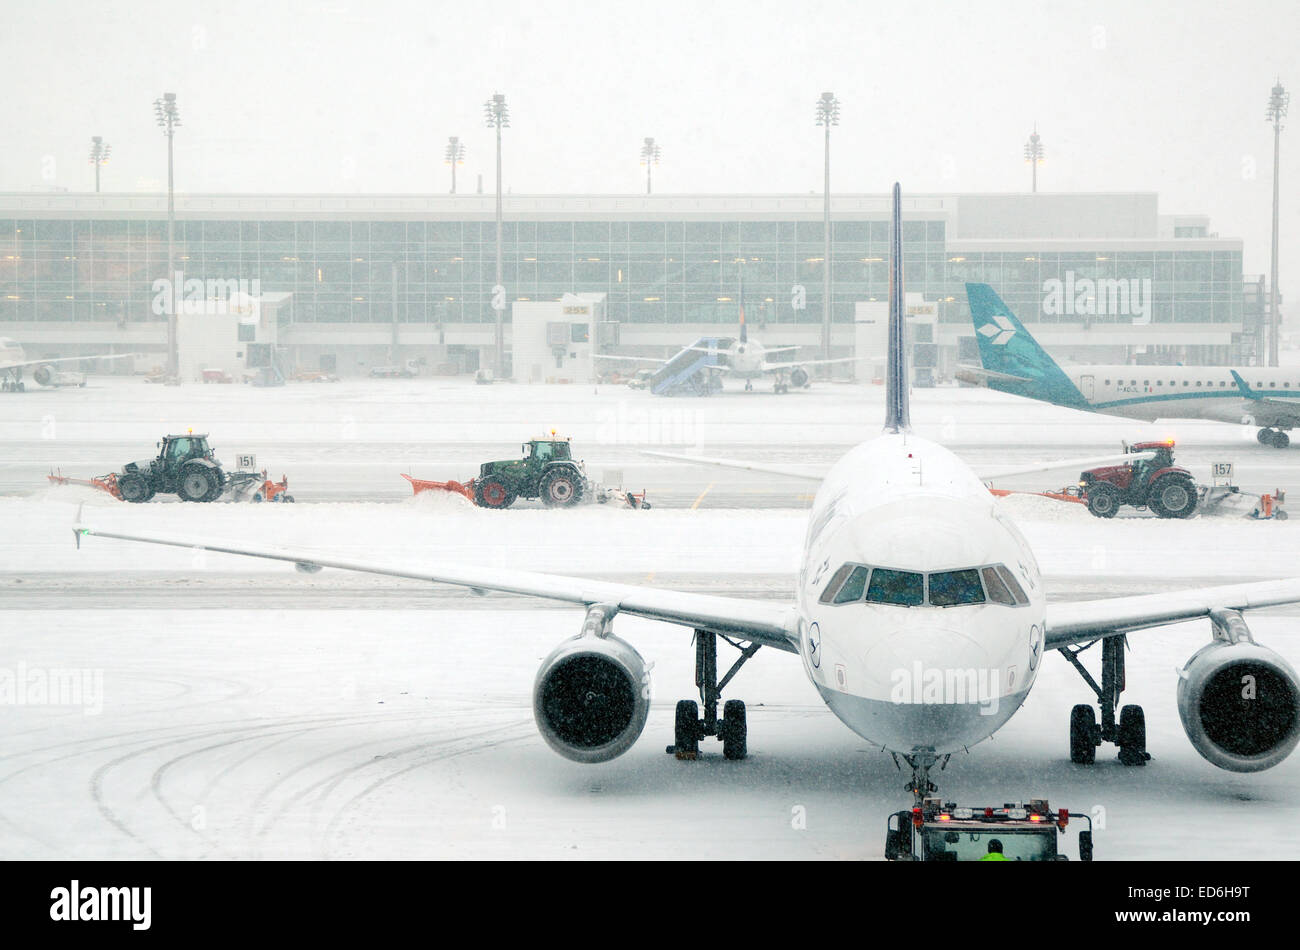 Munich, Alemania. El 29 de diciembre de 2014. Nieve y temperaturas bajo cero causa caos de tráfico, las demoras y cancelaciones de vuelos en muchos aeropuertos europeos como Munich Alemania. Crédito: Chris Hellier/Alamy Live News Foto de stock